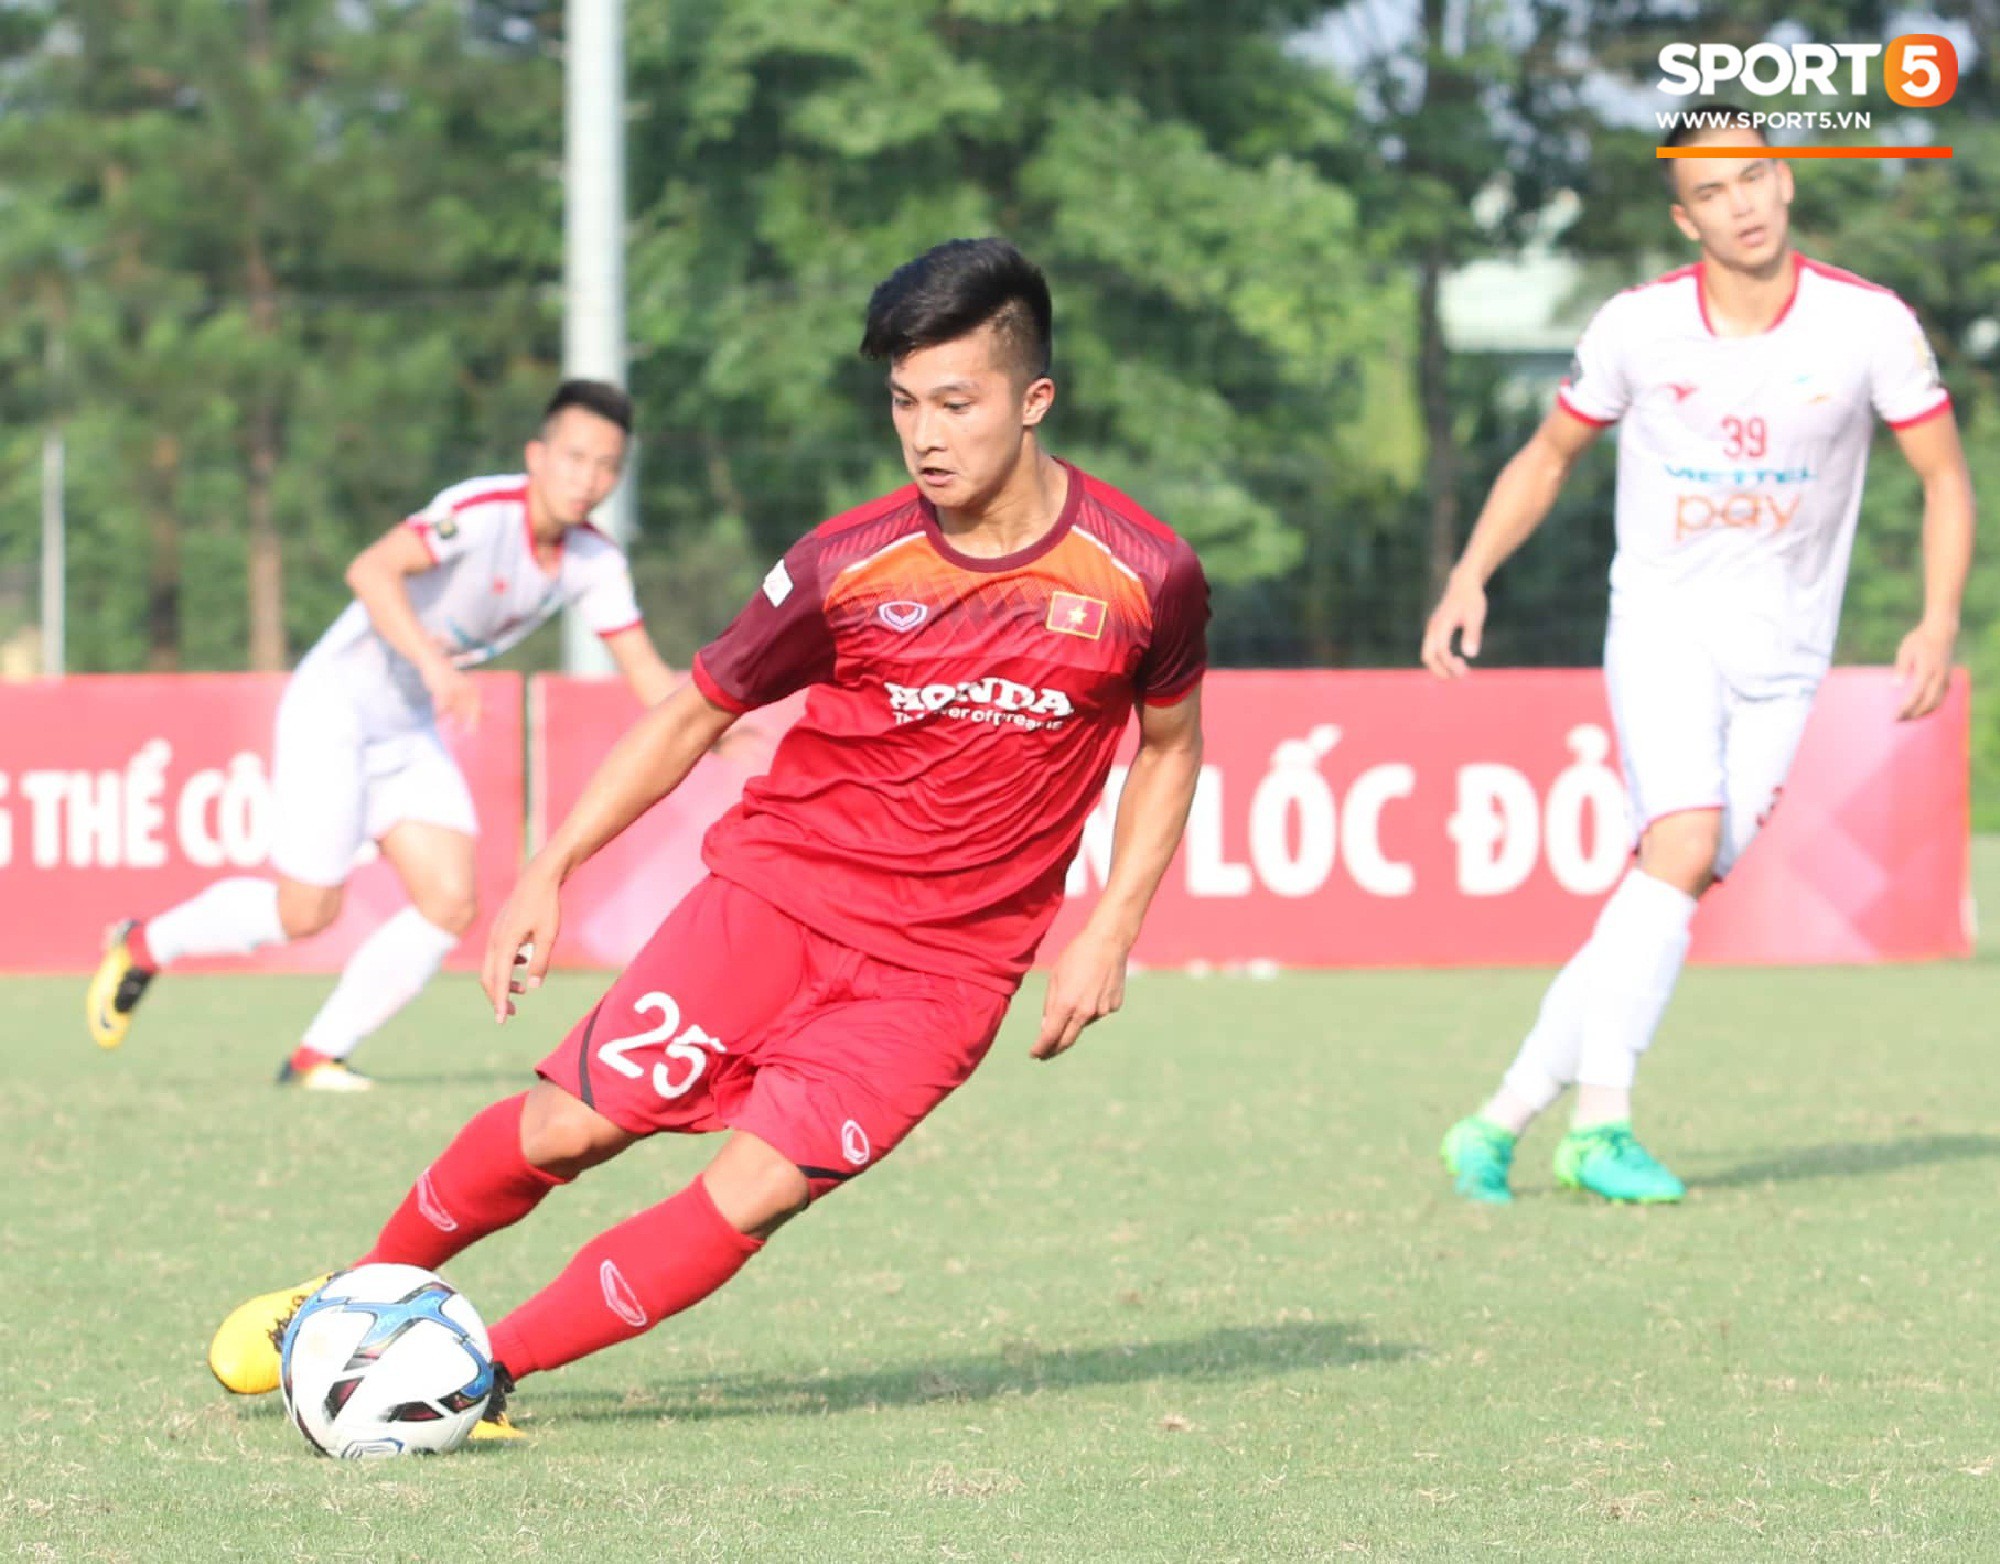 Được thi đấu 70 phút, trợ lý Kim Han-yoon đã chấm Martin Lo cho U23 Việt Nam? - Ảnh 3.